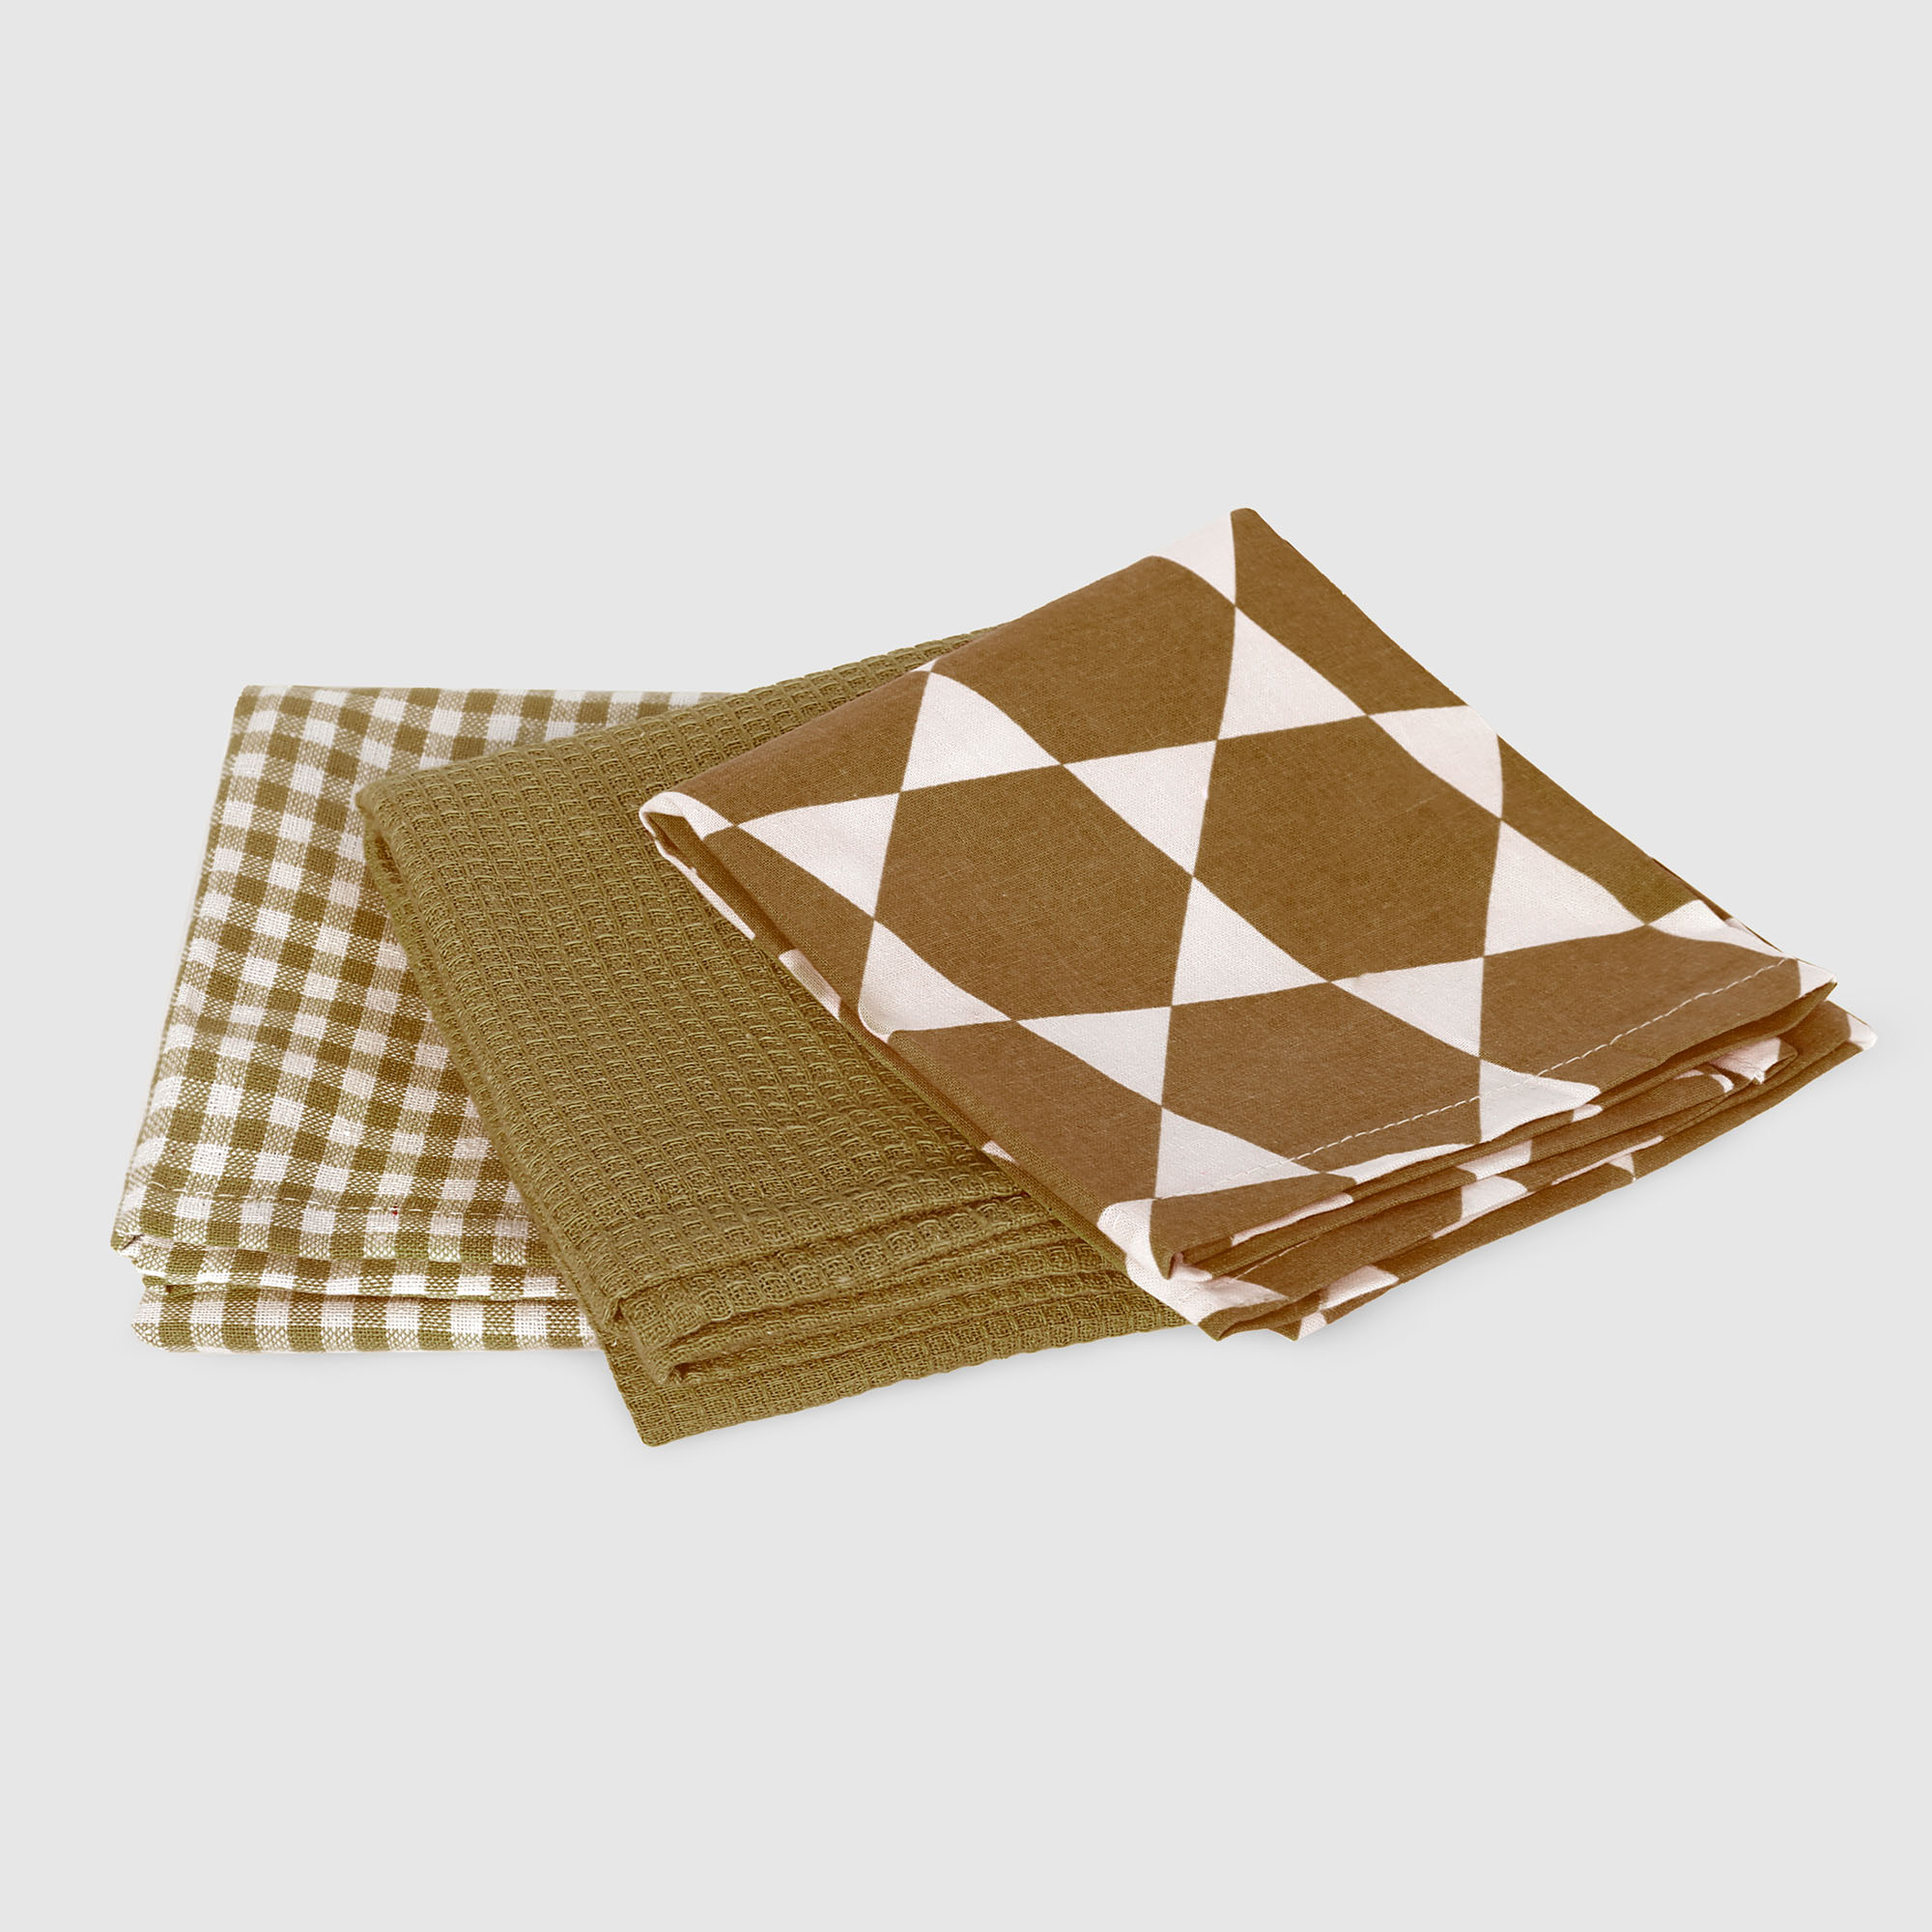 цена Набор кухонных салфеток Homelines textiles 3 шт 45x65 см white/brown